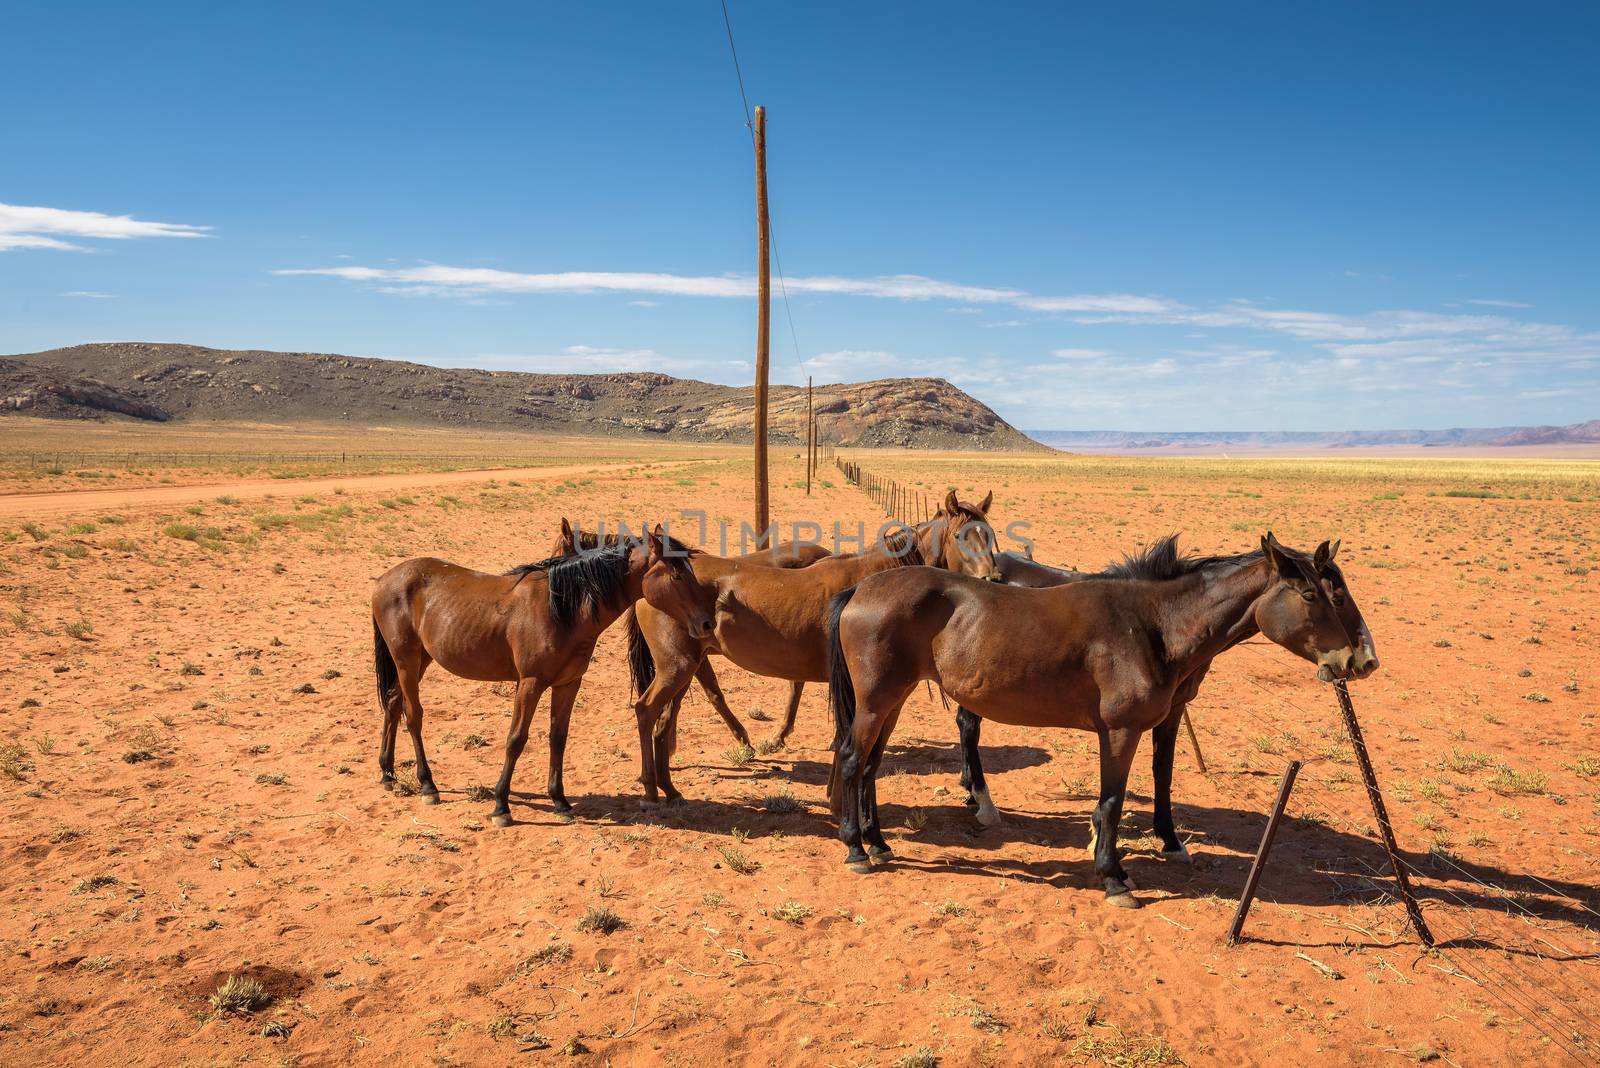 Wild horses of the Namib desert near Aus in south Namibia.